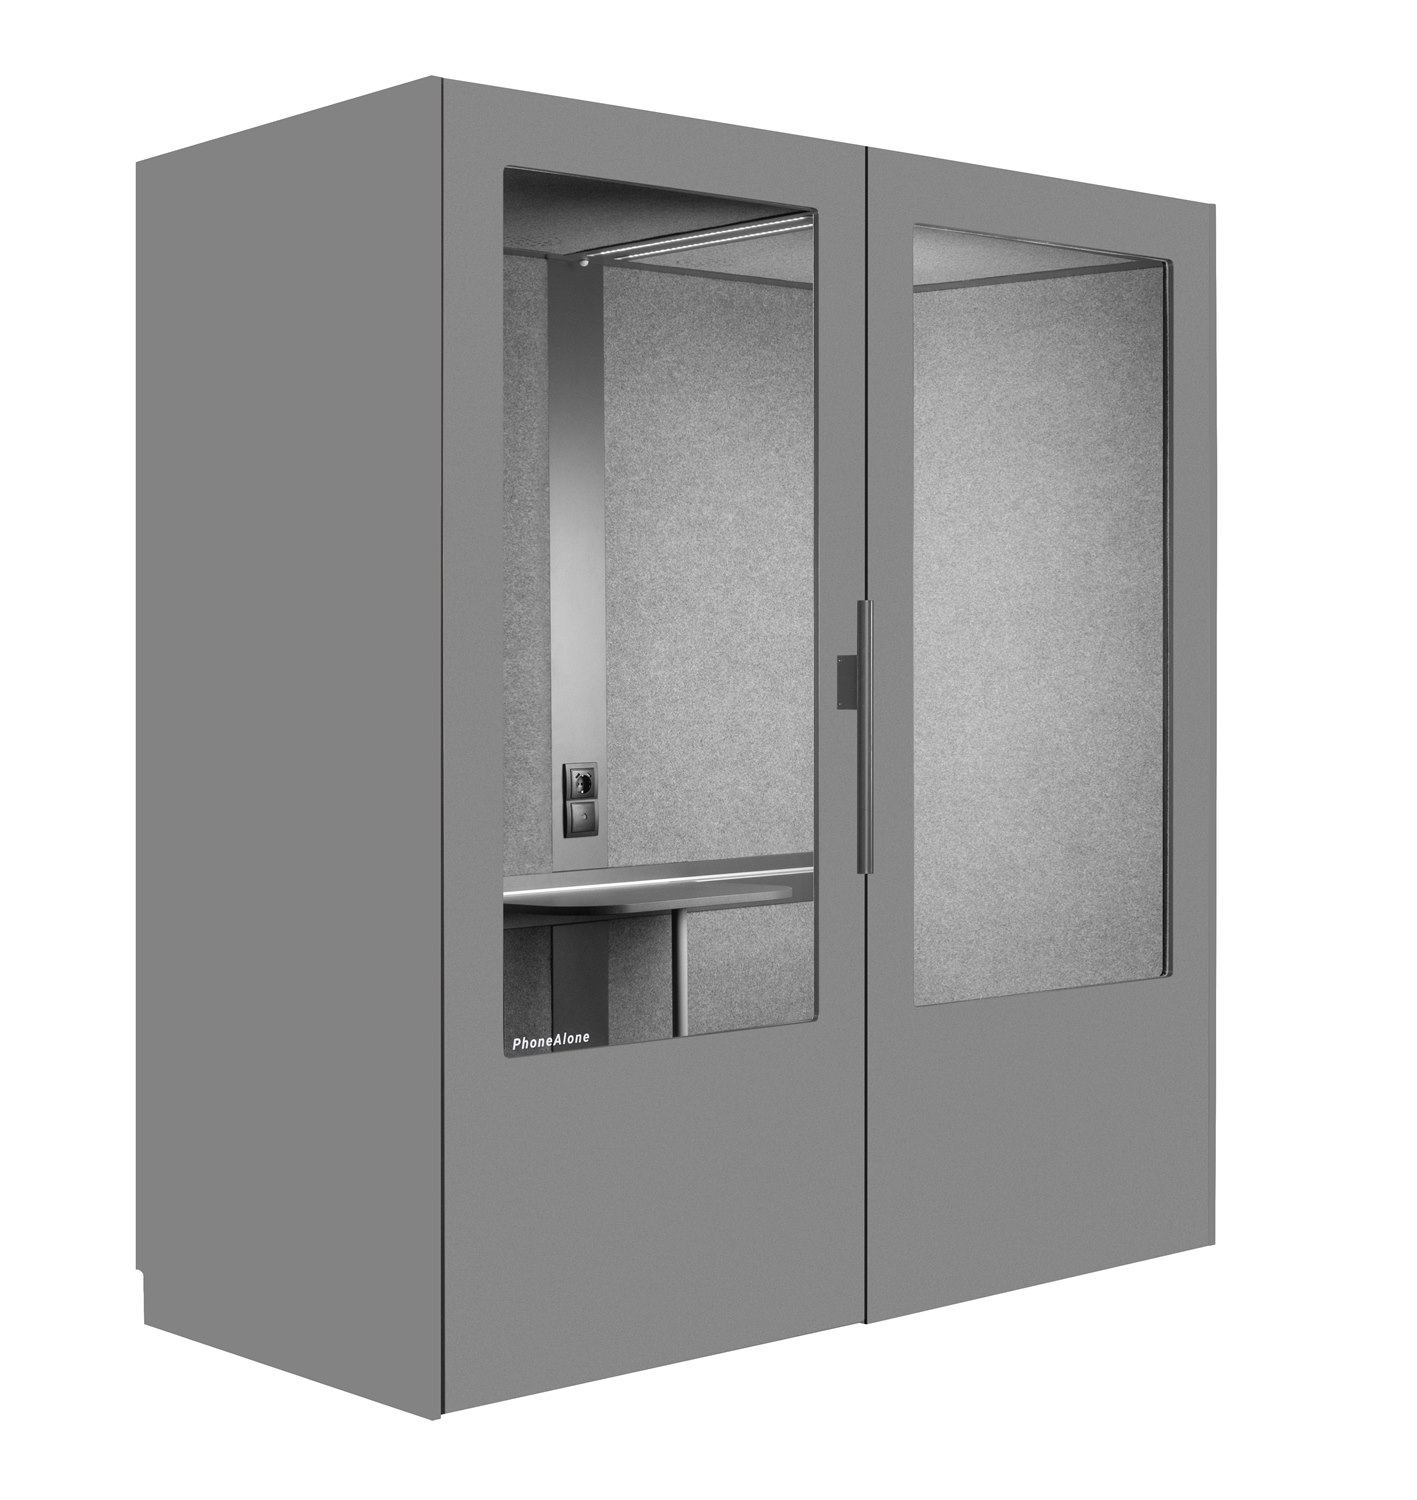 Dubbelbox tyst rum automatiskt desinfektion grå